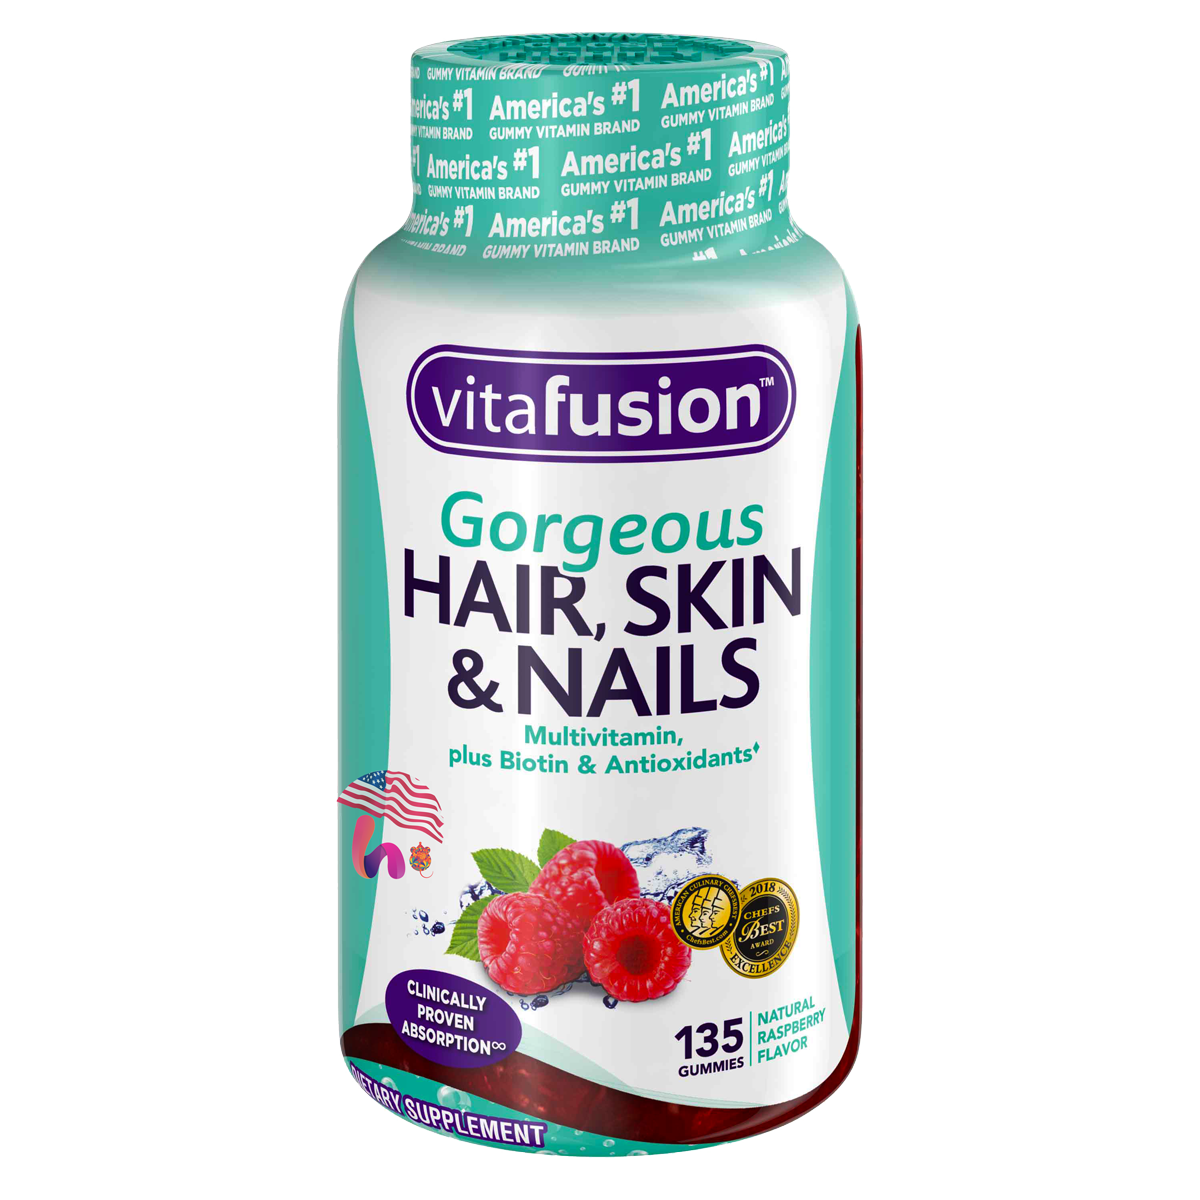 Kẹo Dẻo Hair Skin & Nails Vitafusion Gorgeous Của Mỹ - Hàng Mỹ Xách Tay -  Chuyên cung cấp hàng Mỹ xách tay